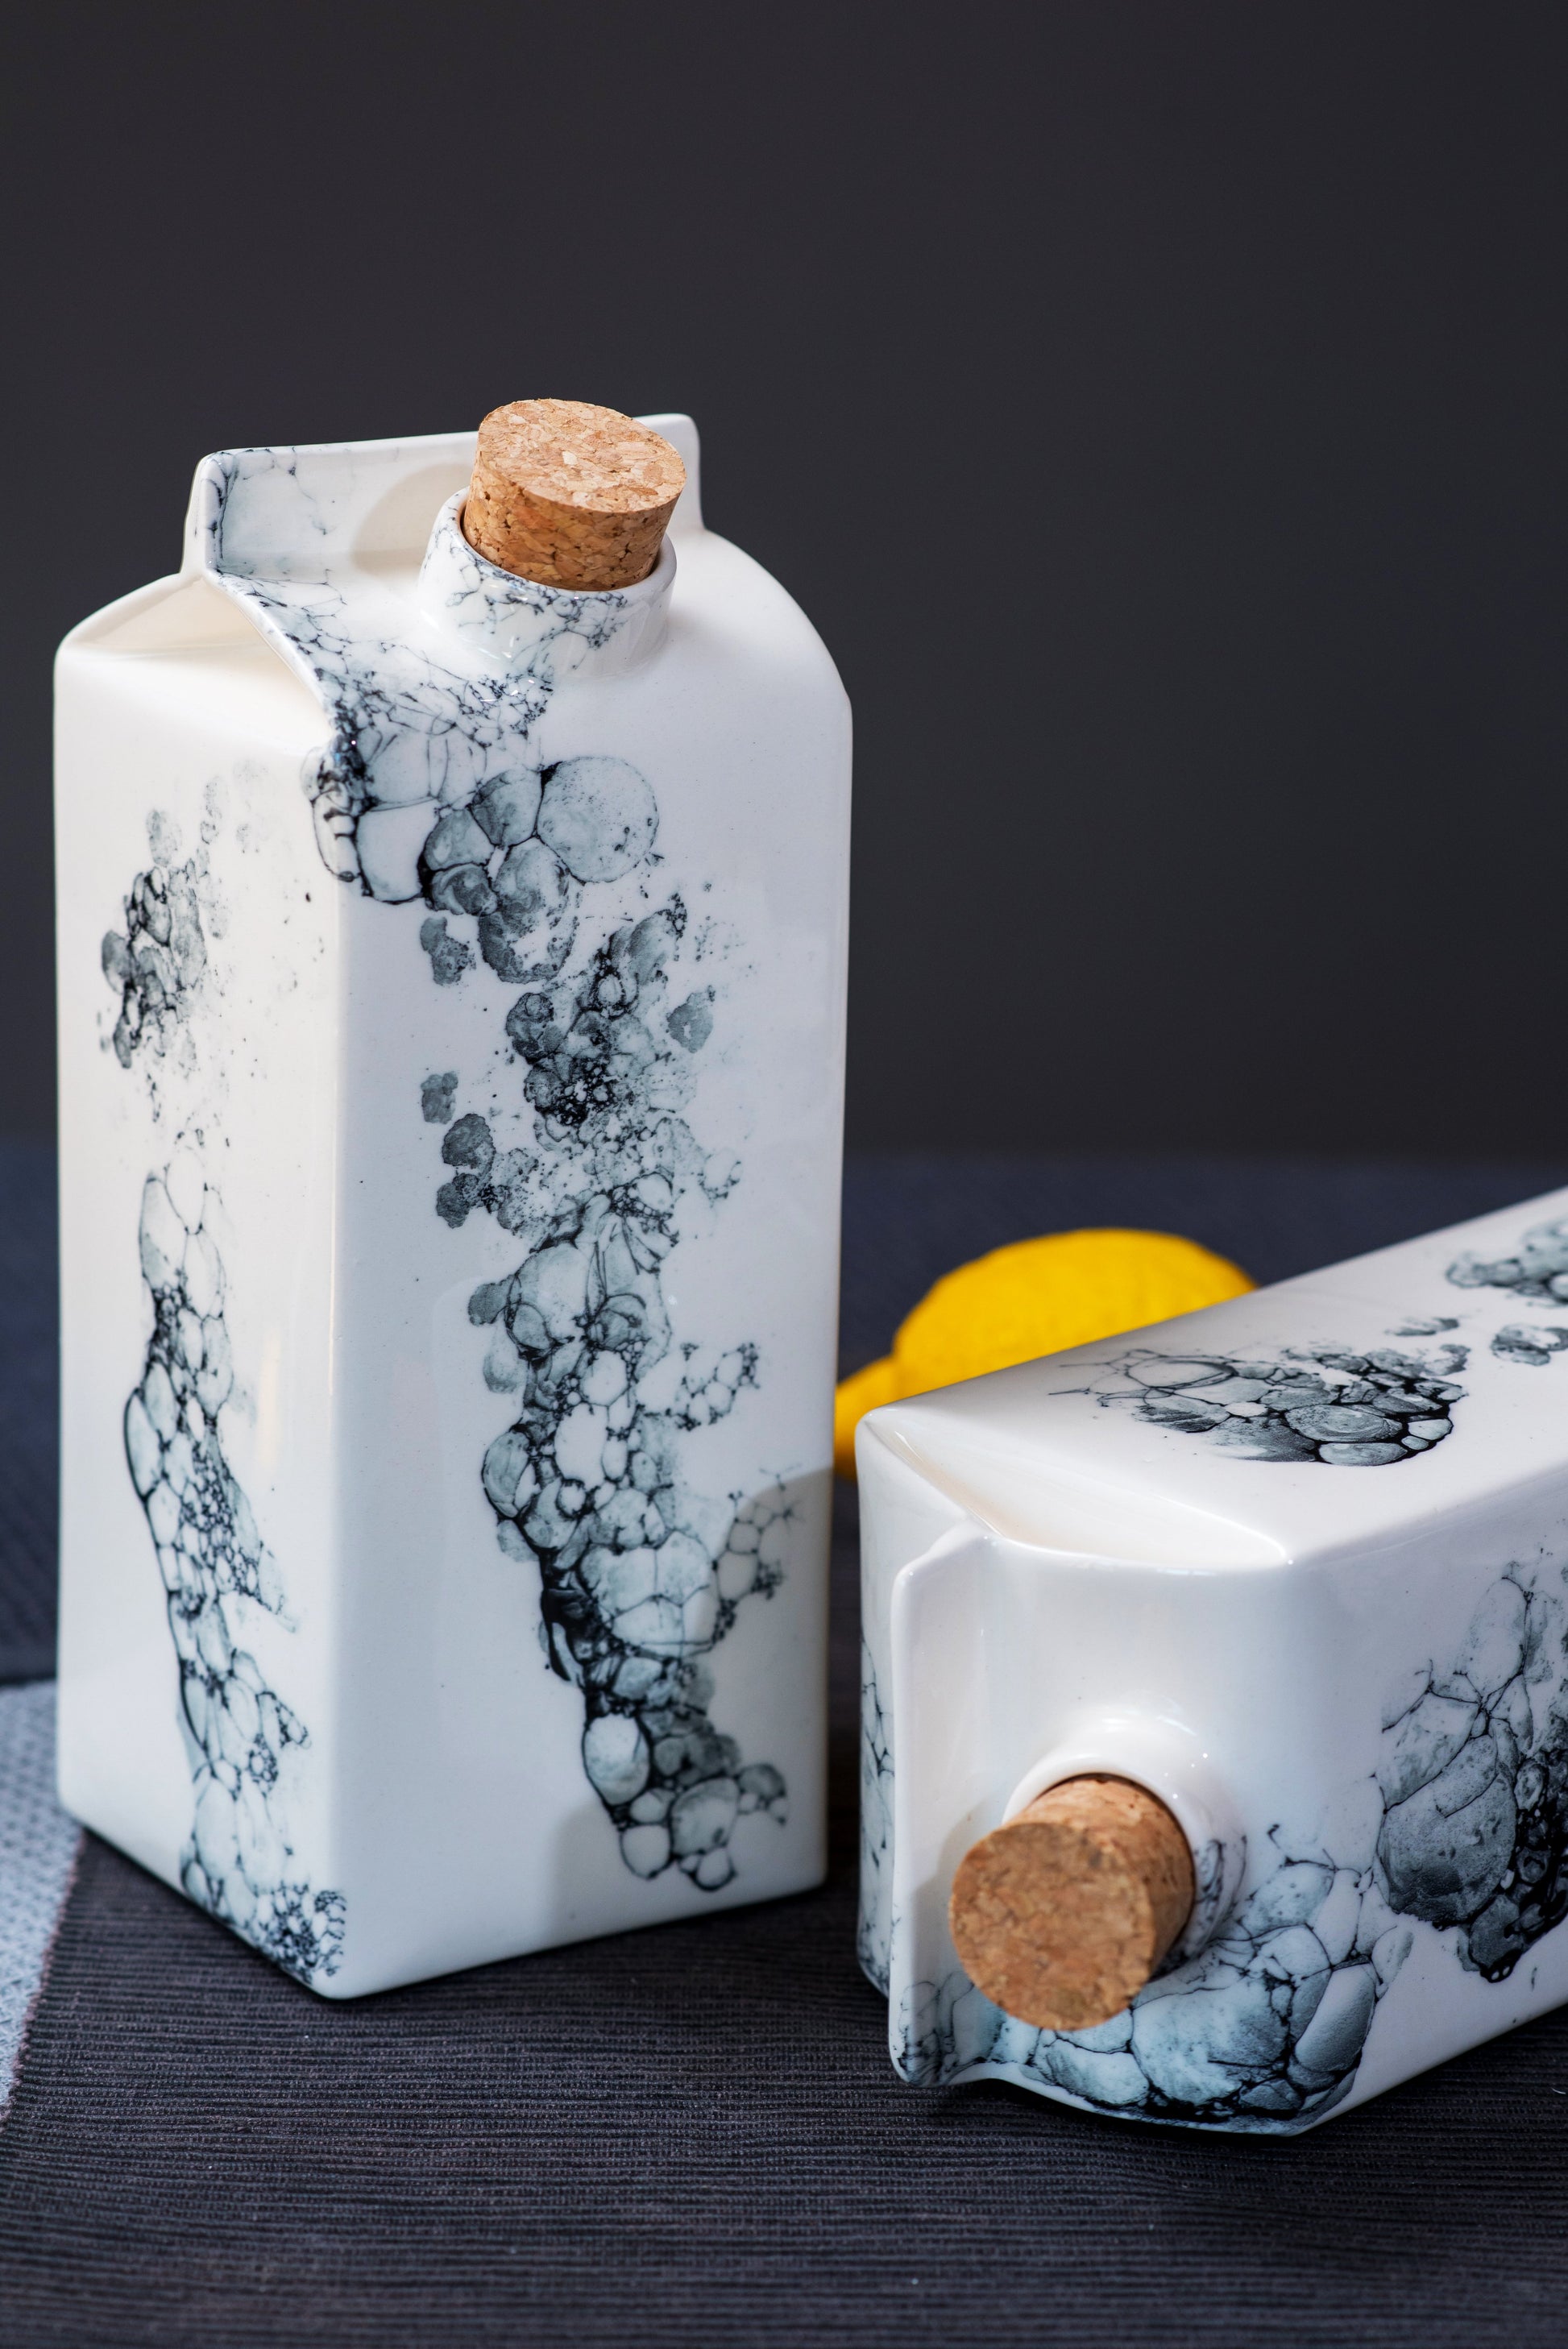 Designer porcelain milk bottle or vase - white with black bubbles MADE TO ORDER - ZLATNAporcelain